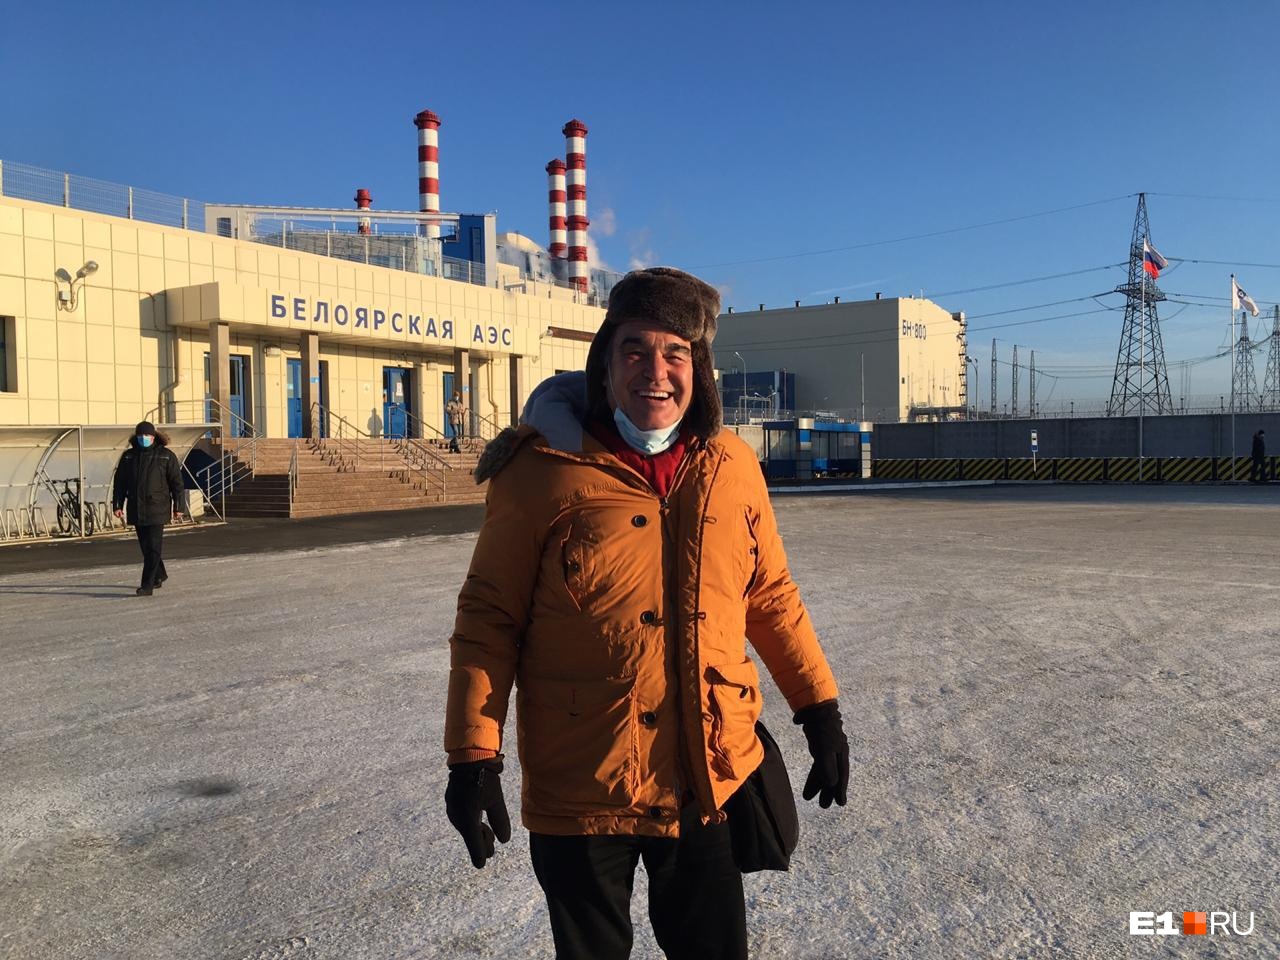 Оскароносный режиссер Оливер Стоун прогулялся по Белоярской АЭС. Публикуем фото